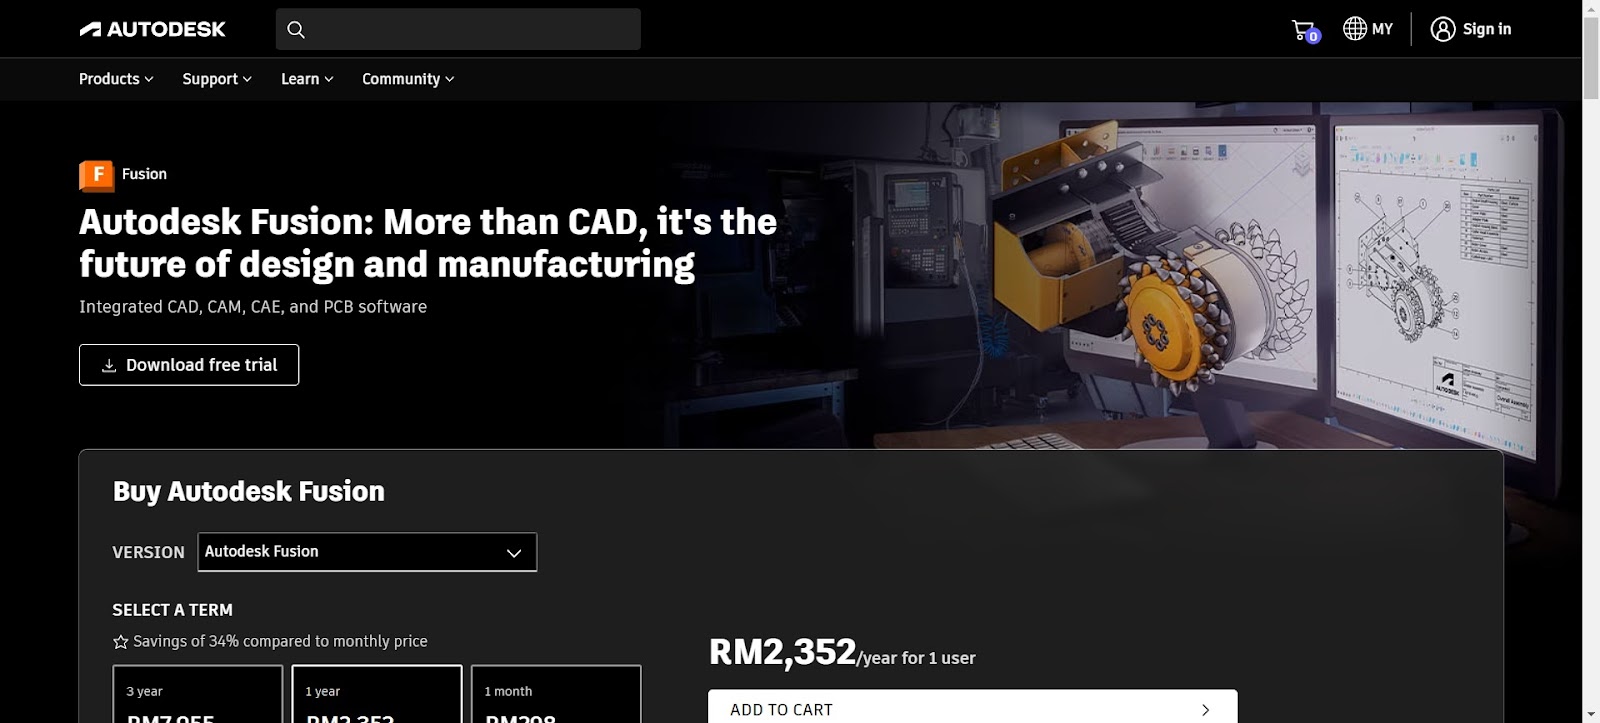 A screenshot of Autodesk's website